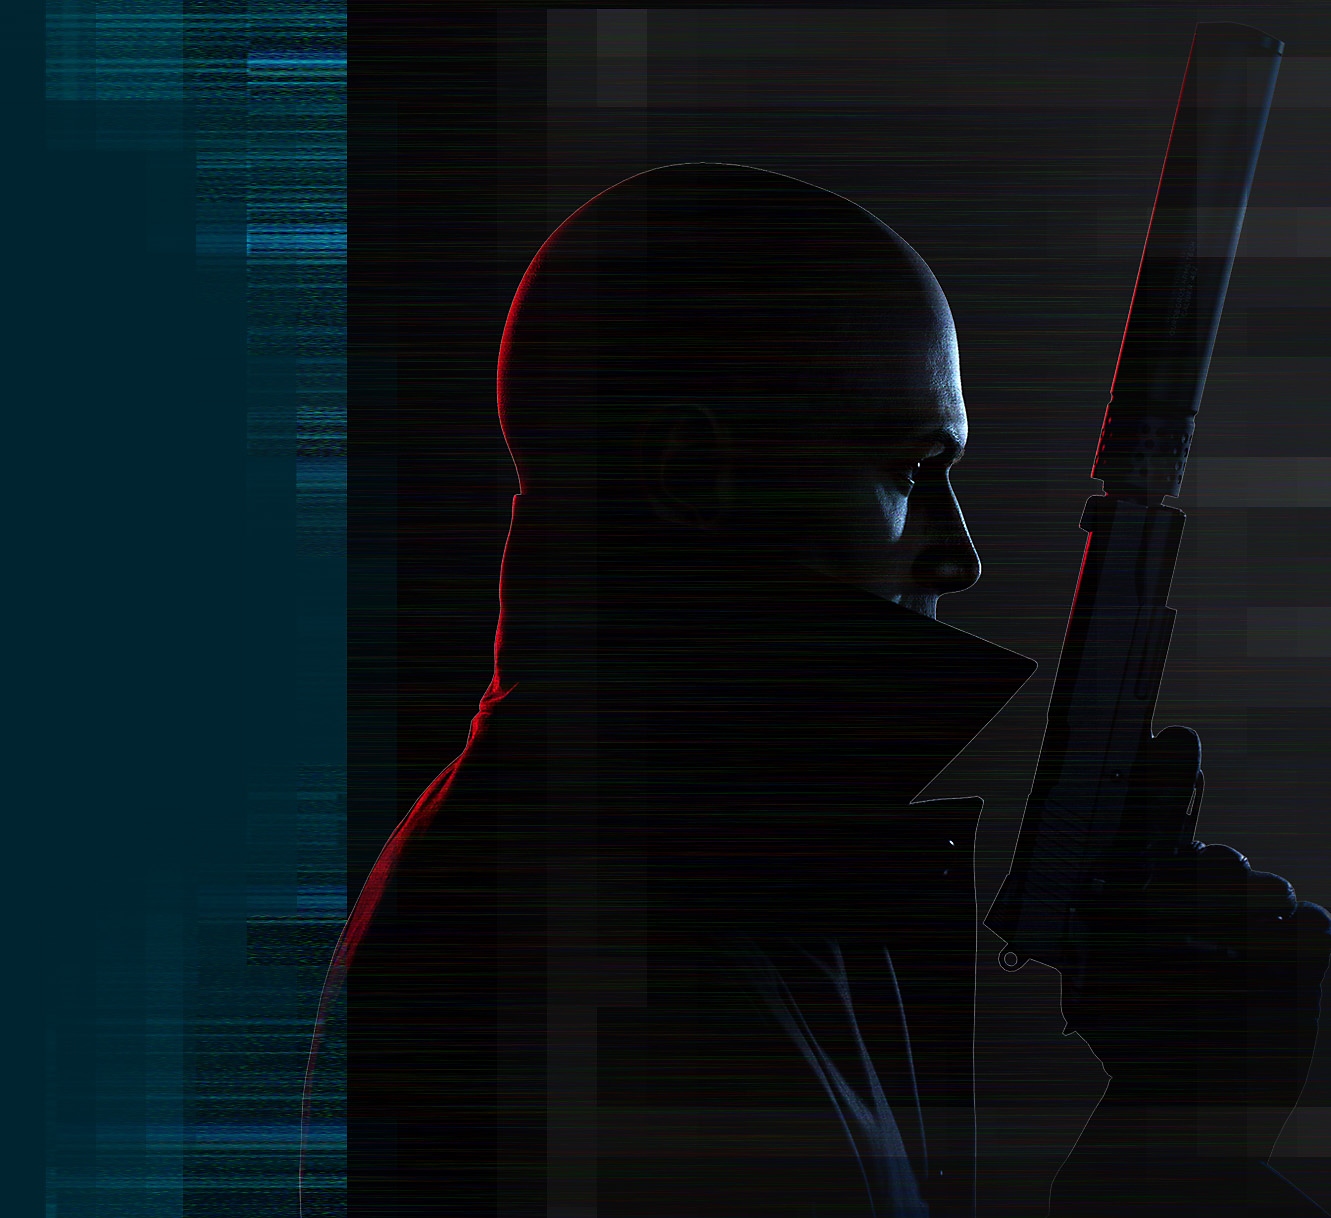 ภาพศิลป์เรนเดอร์ตัวละคร 'Agent 47' จากเกม Hitman 3 ที่กำลังถือปืนสั้นเก็บเสียง